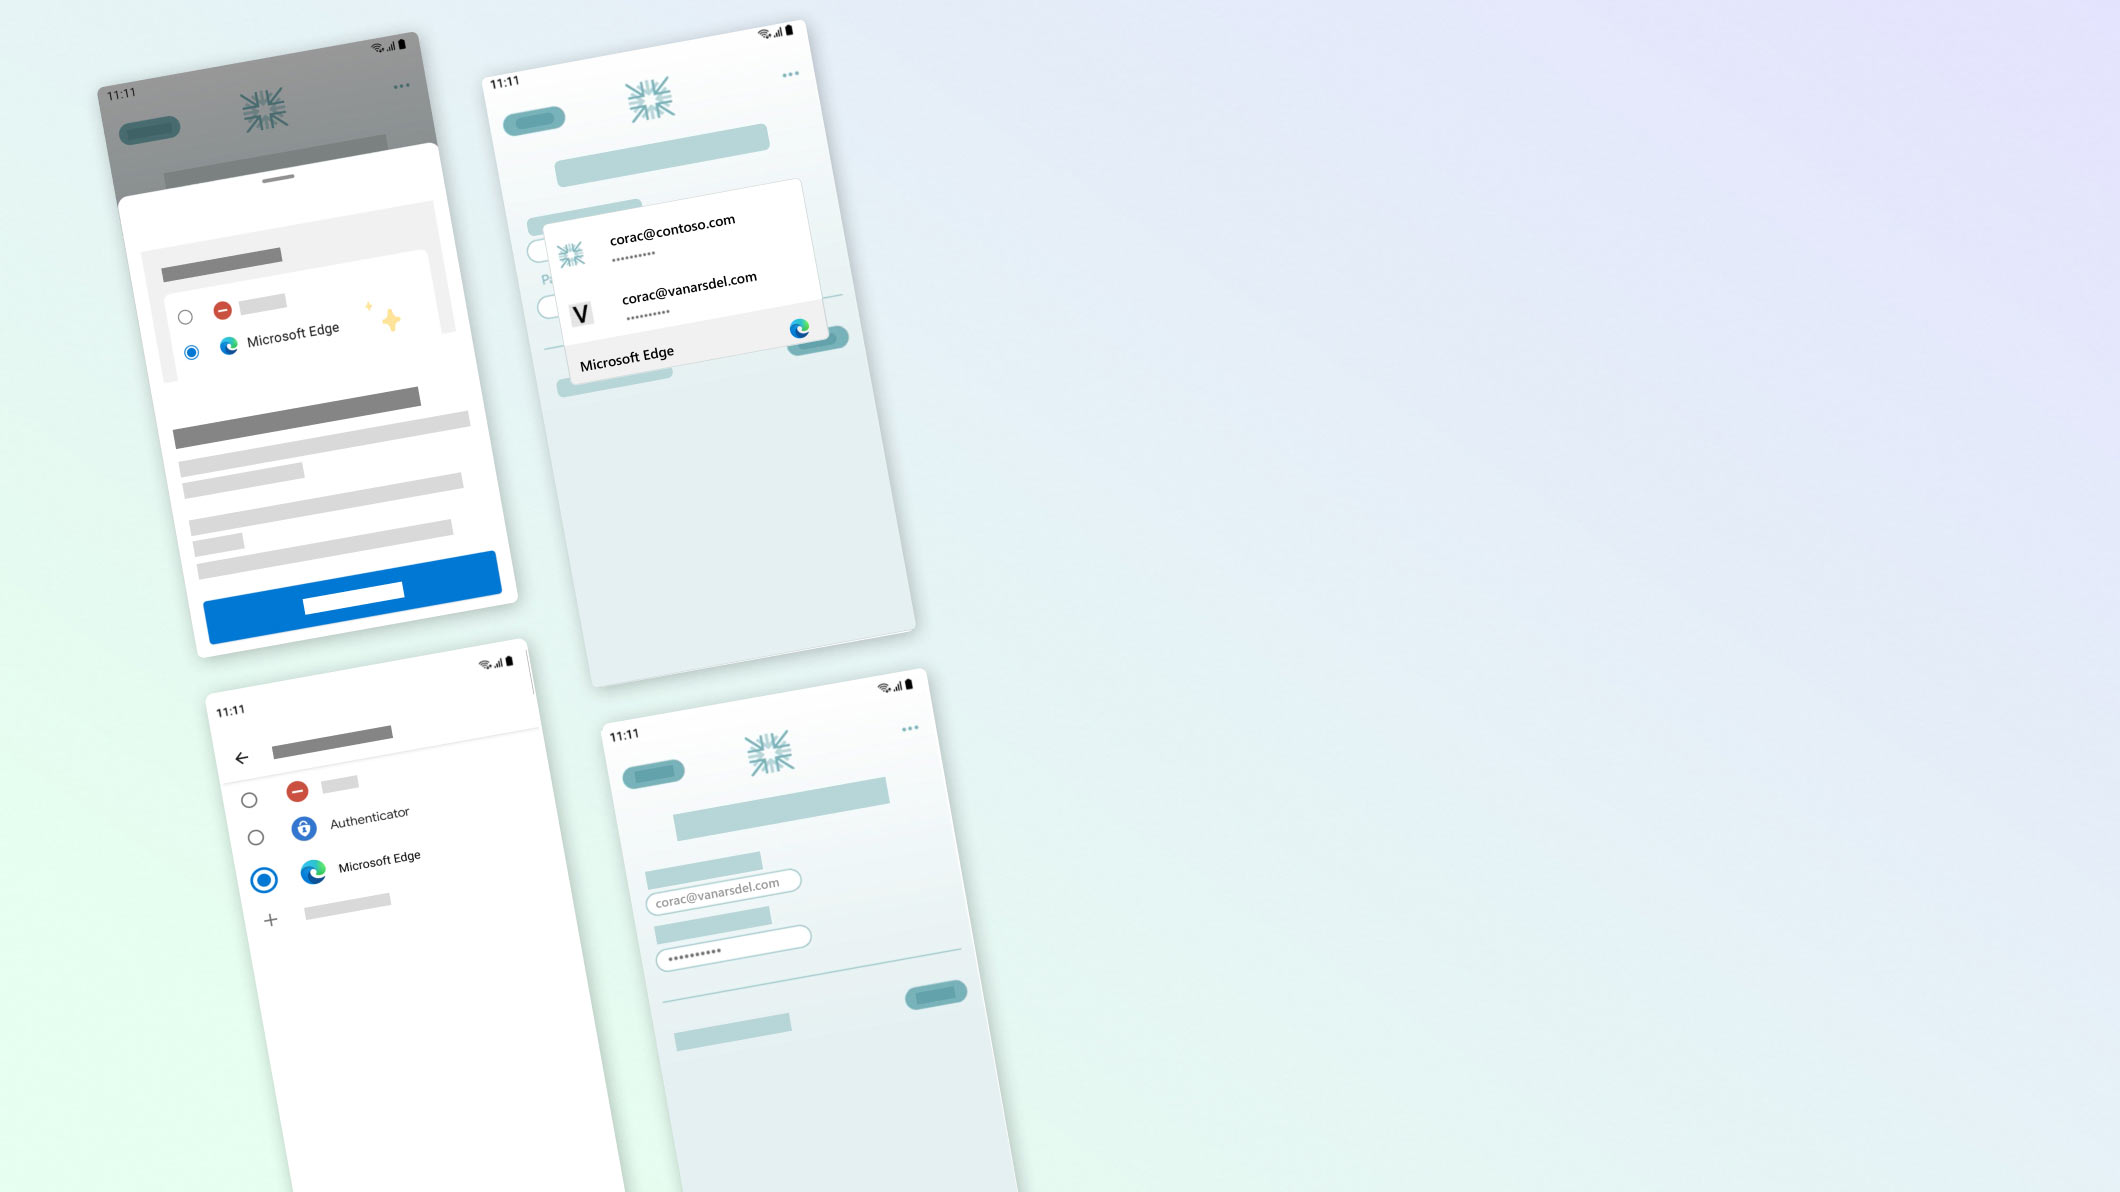 Plusieurs écrans mobiles affichant le gestionnaire de mots de passe avec les paramètres de remplissage automatique, notamment les options de connexion biométriques et pour LinkedIn